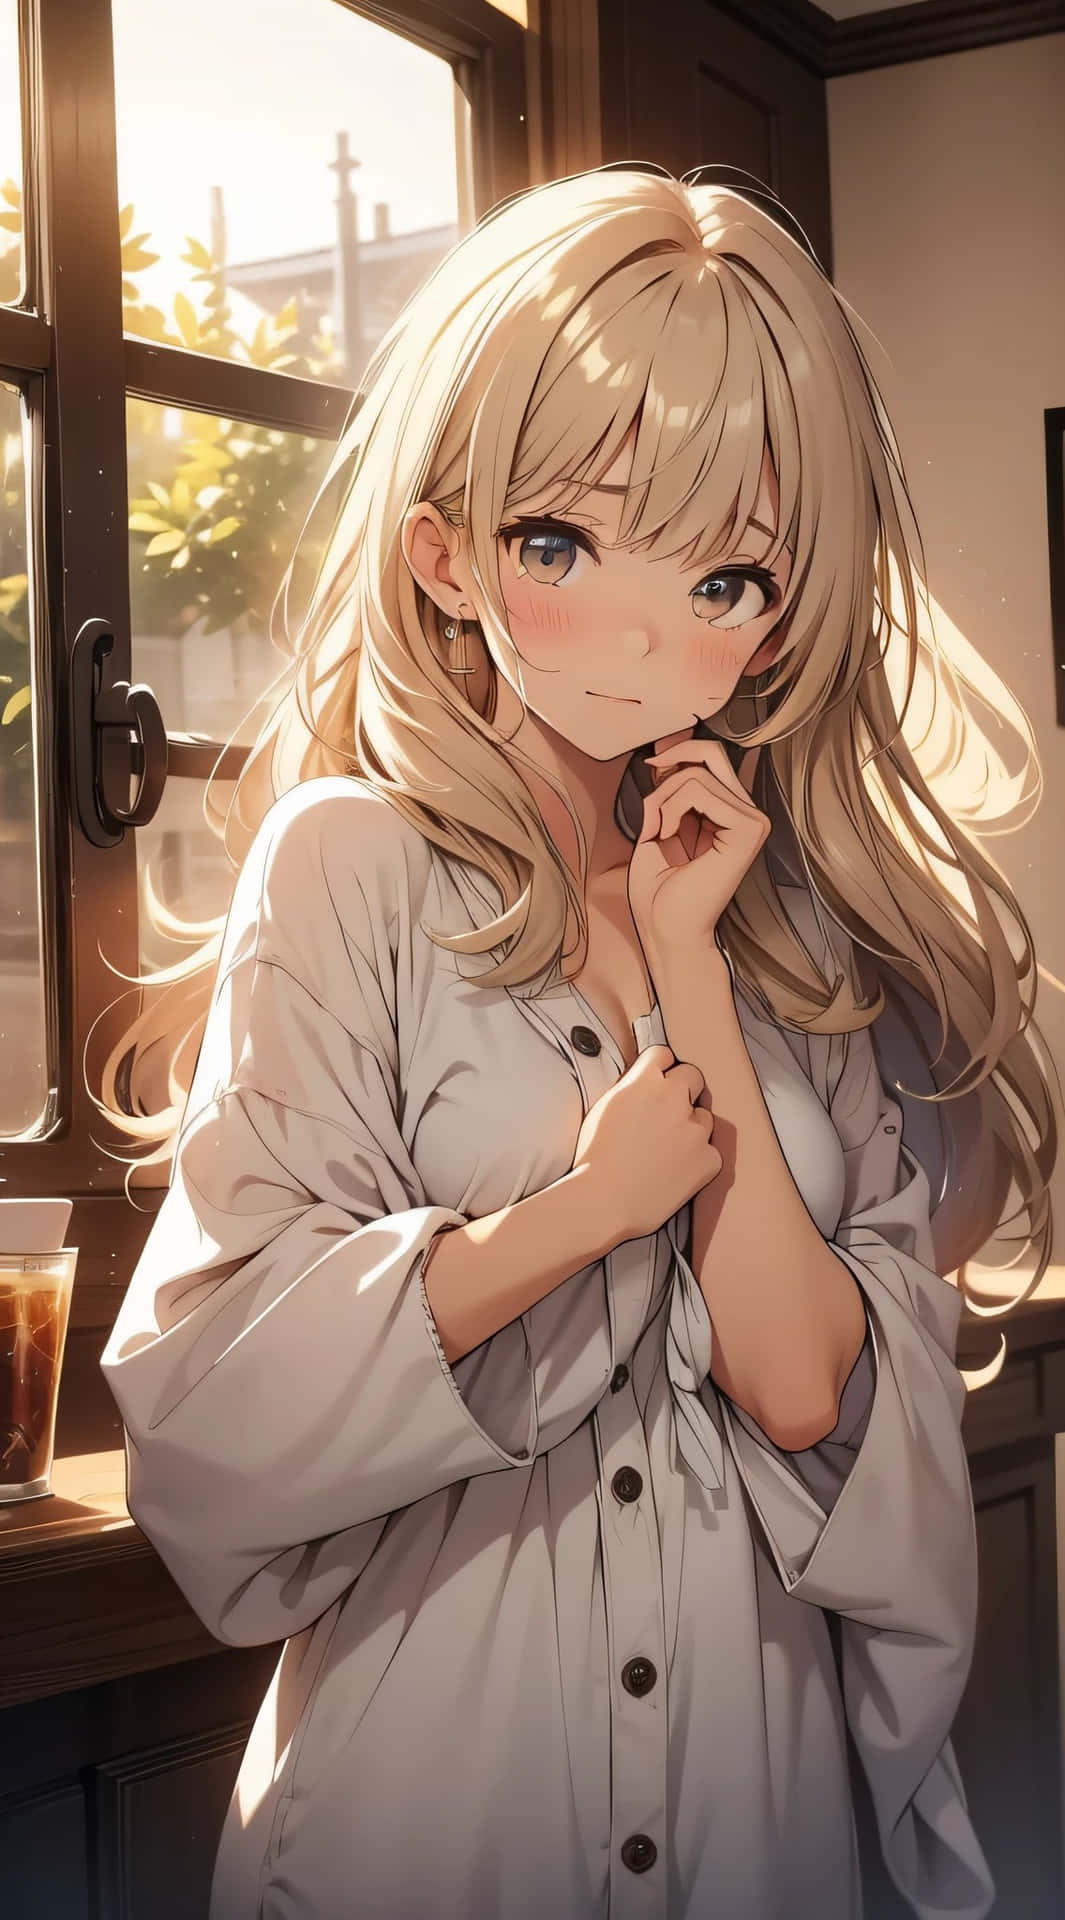 Blushing Anime Girlin Sunlight Wallpaper